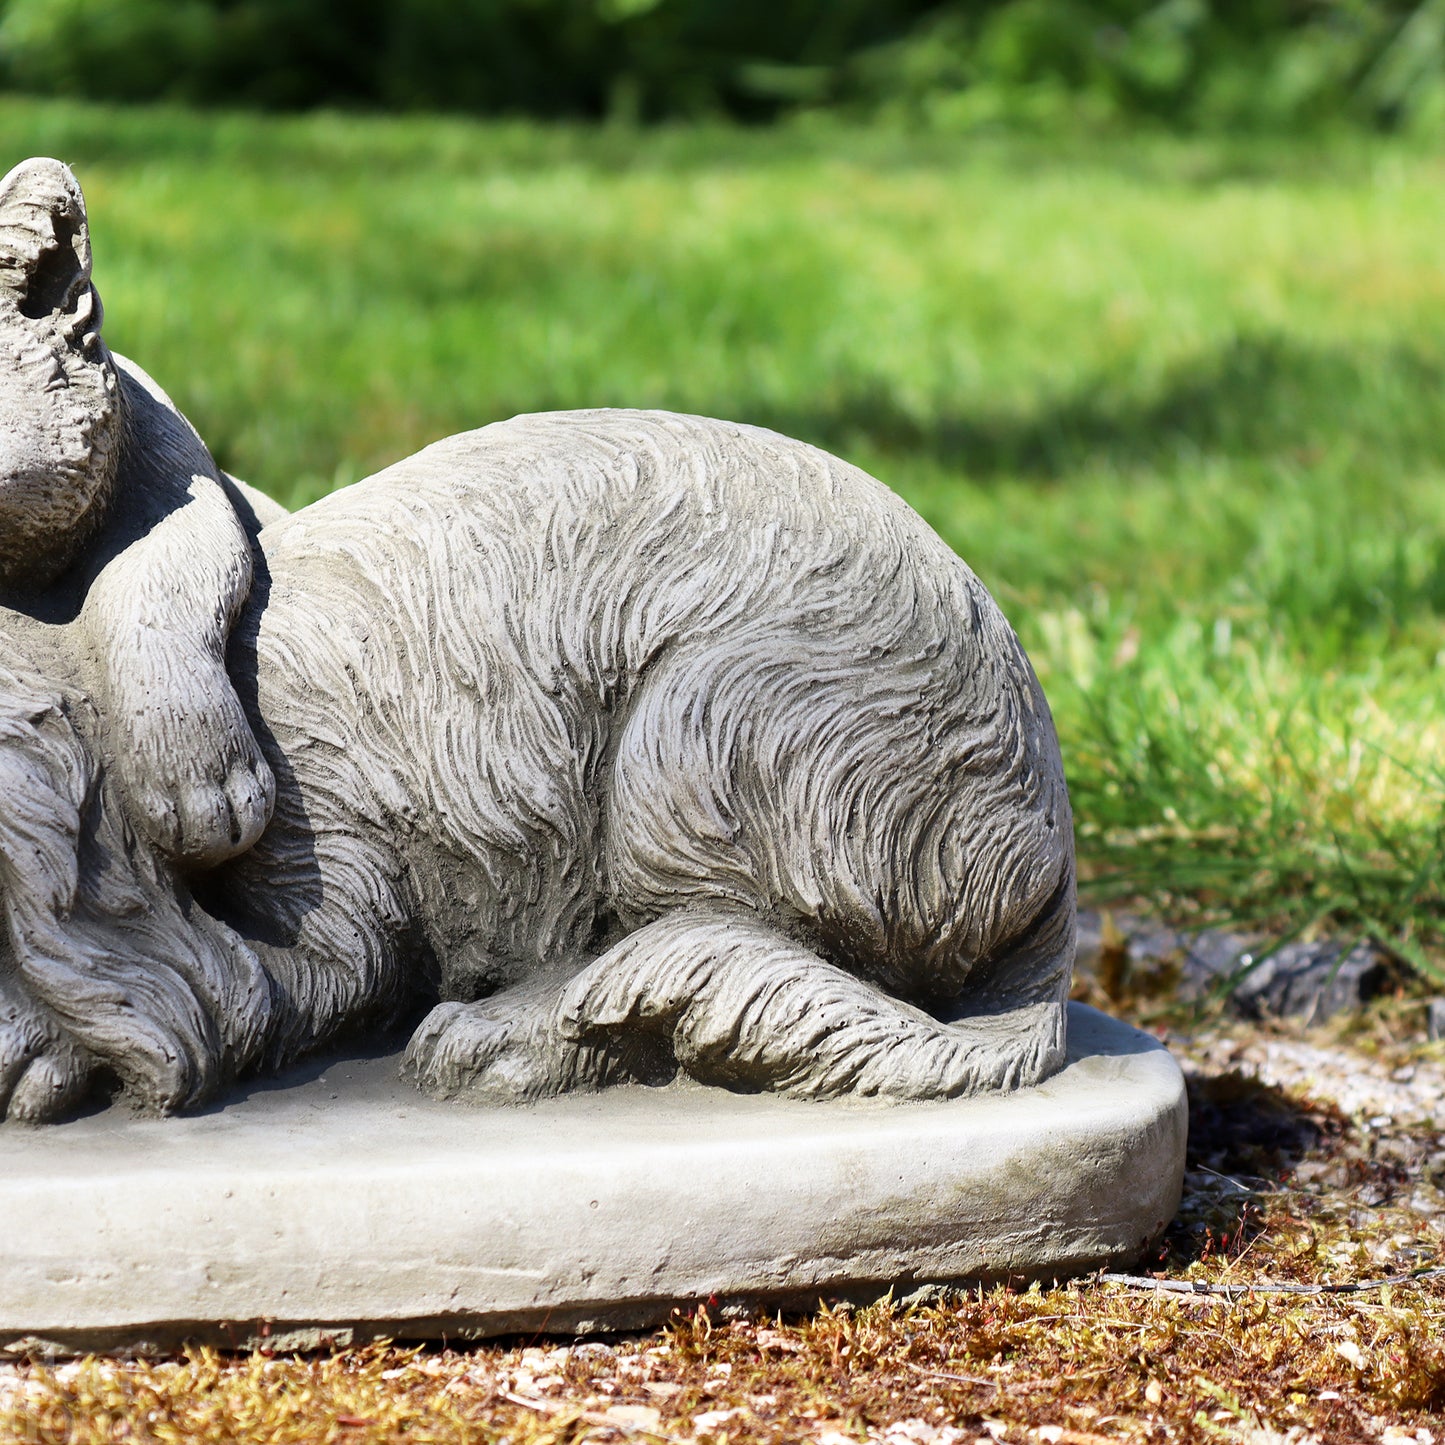 Stone Sleeping Puppy And Kitten Sculpture